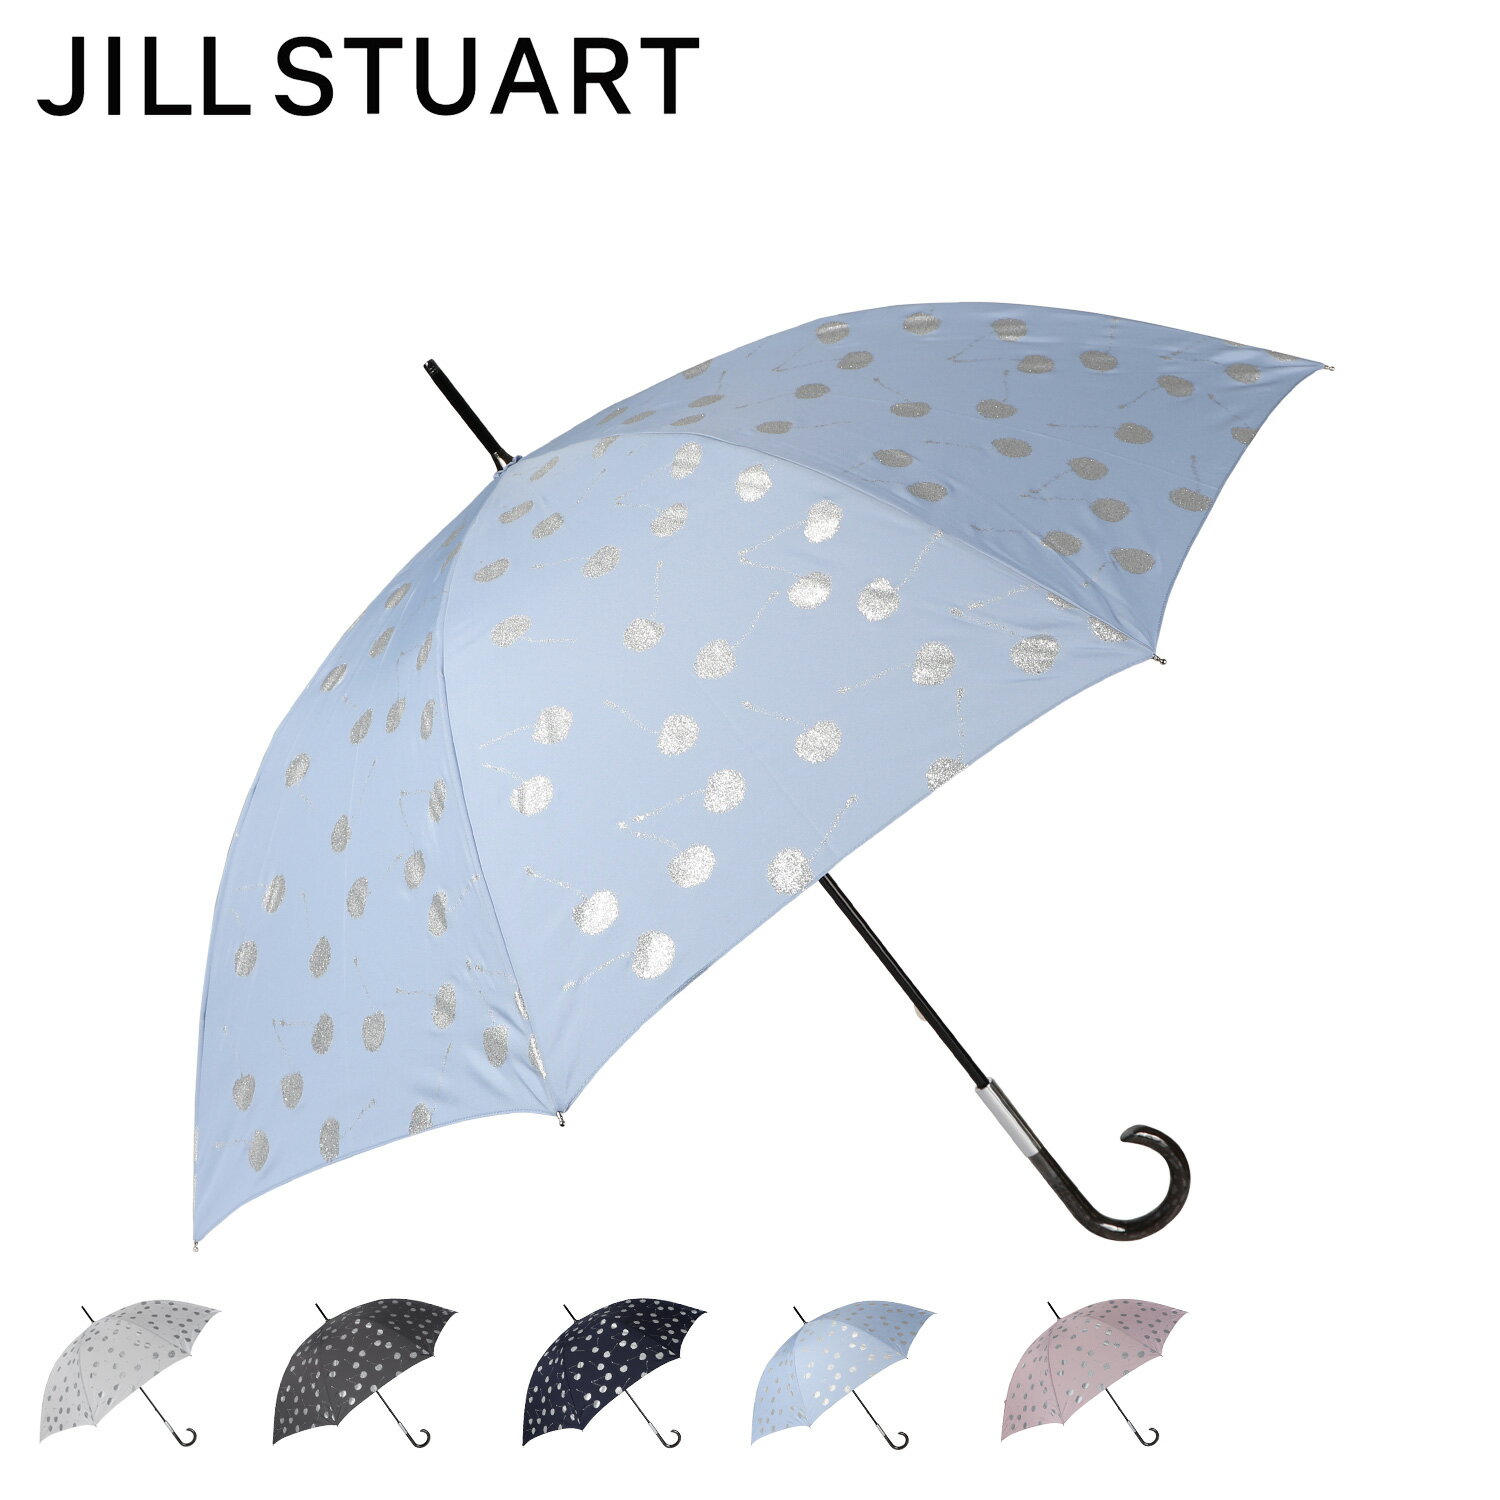 ジル スチュアート 傘 ジルスチュアート JILLSTUART 長傘 雨傘 レディース 60cm 軽量 オフ ホワイト グレー ネイビー ブルー ピンク 1JI11027 母の日